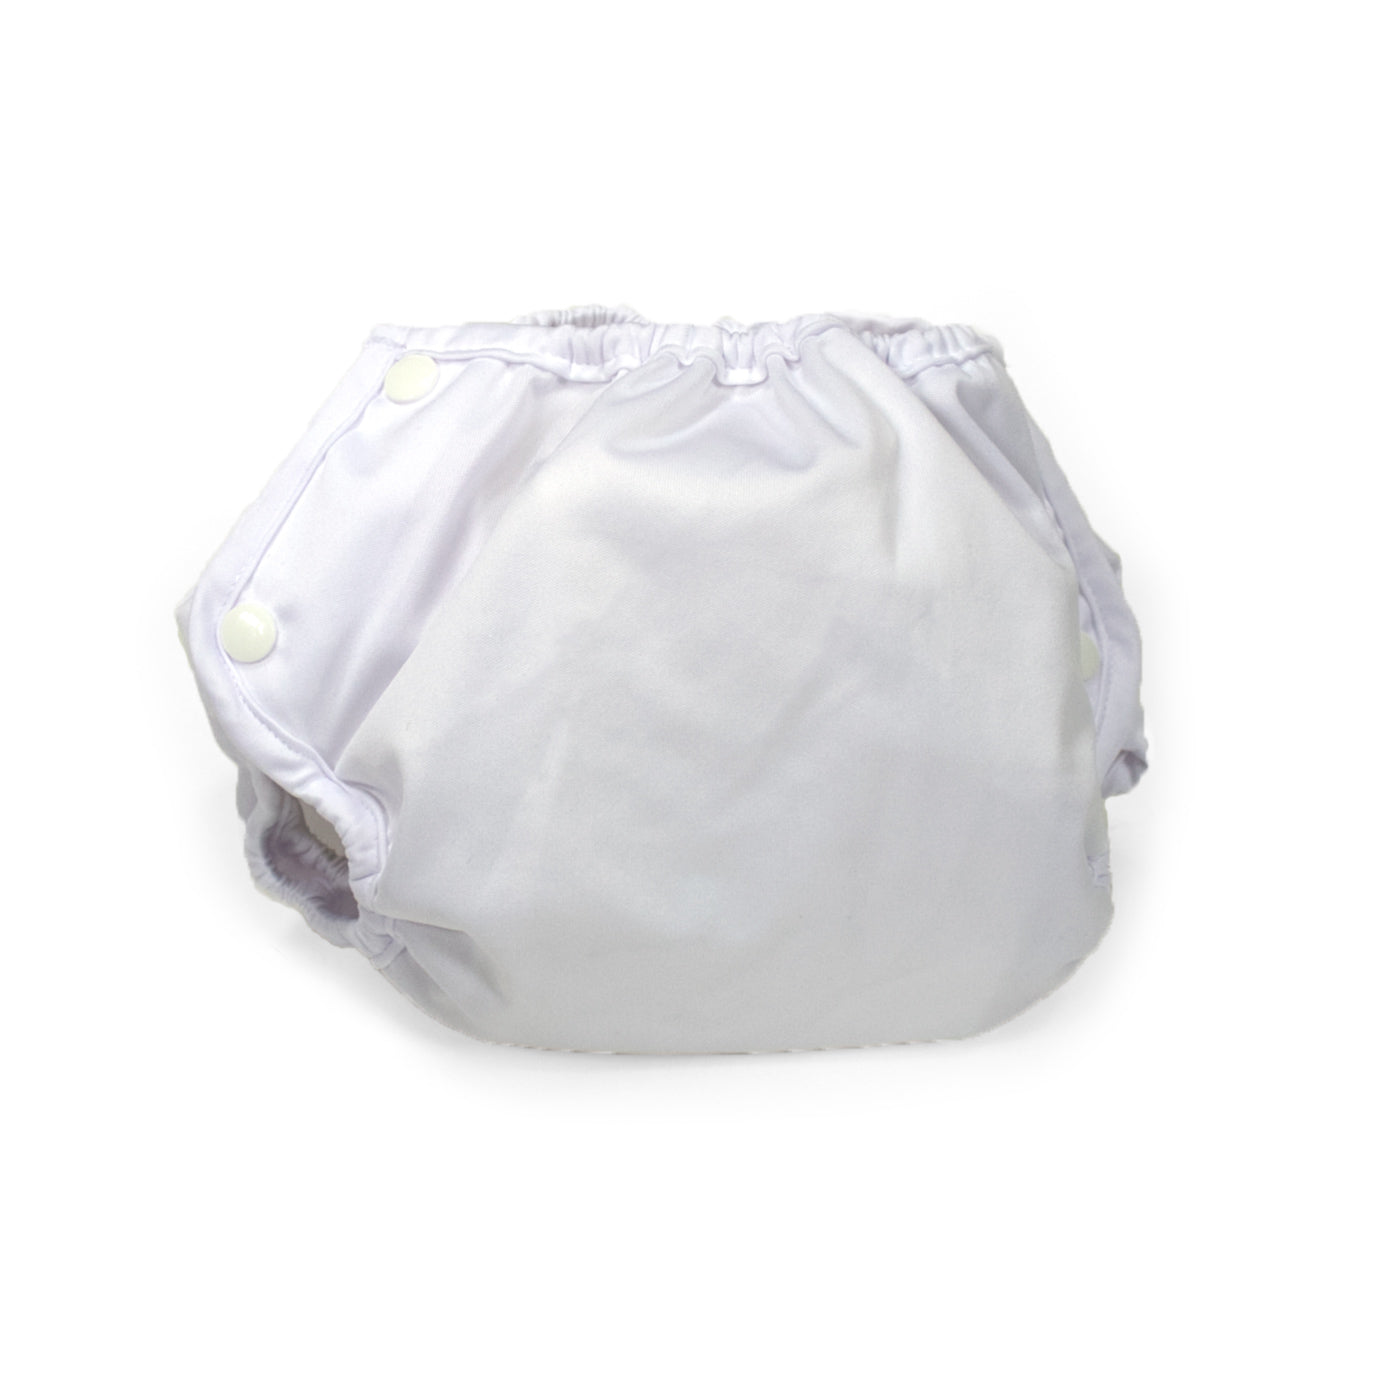 Adult Diaper Wrap - White